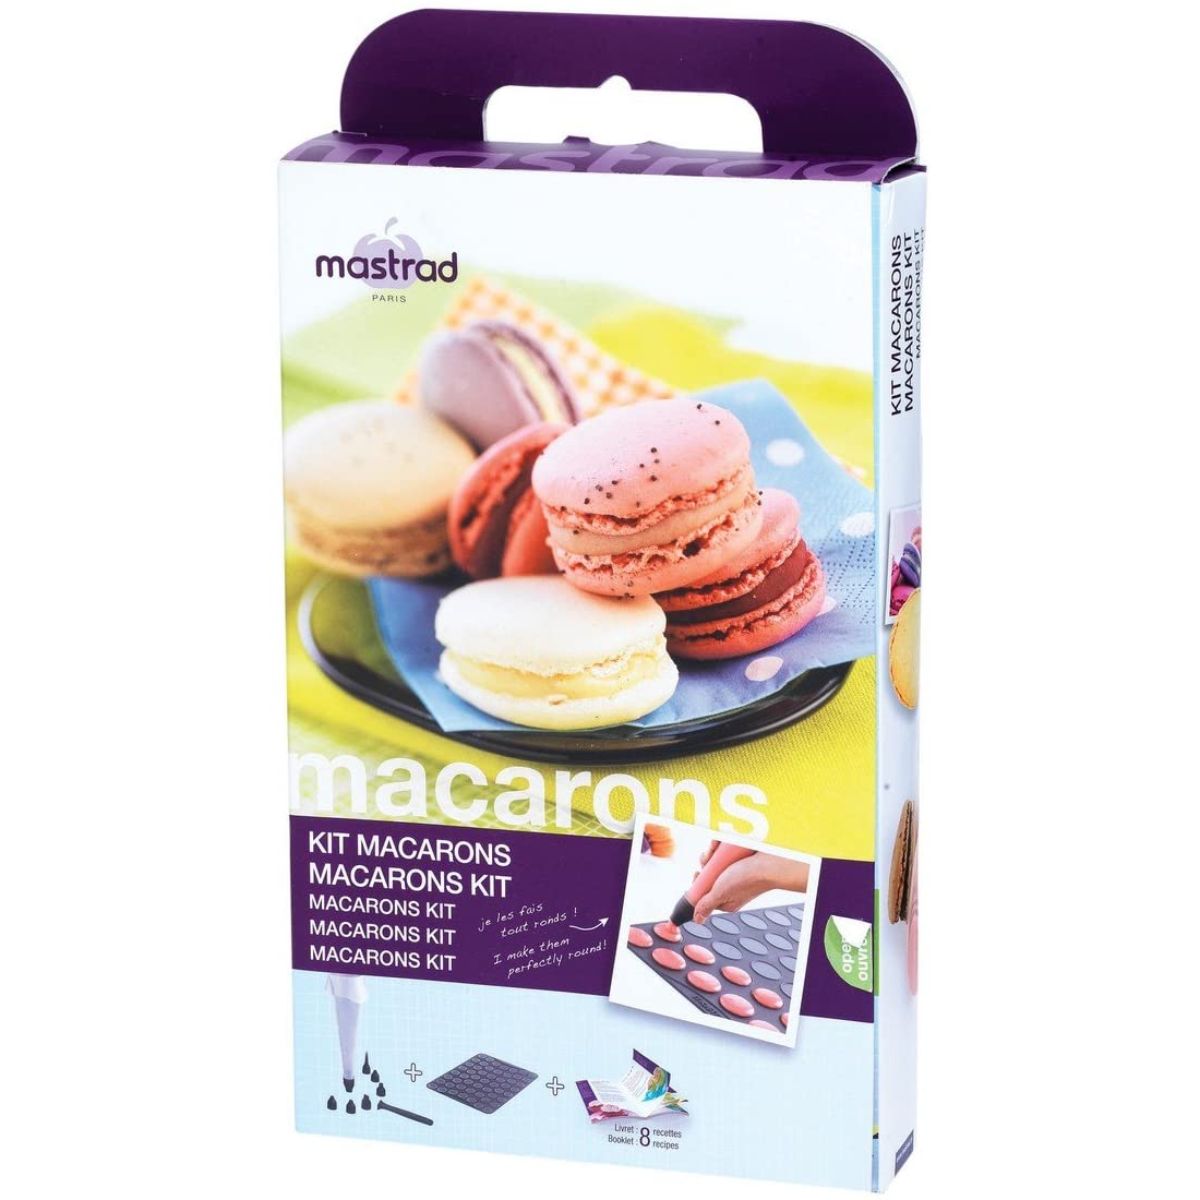 Mastrad Macarons Kit Charcoal